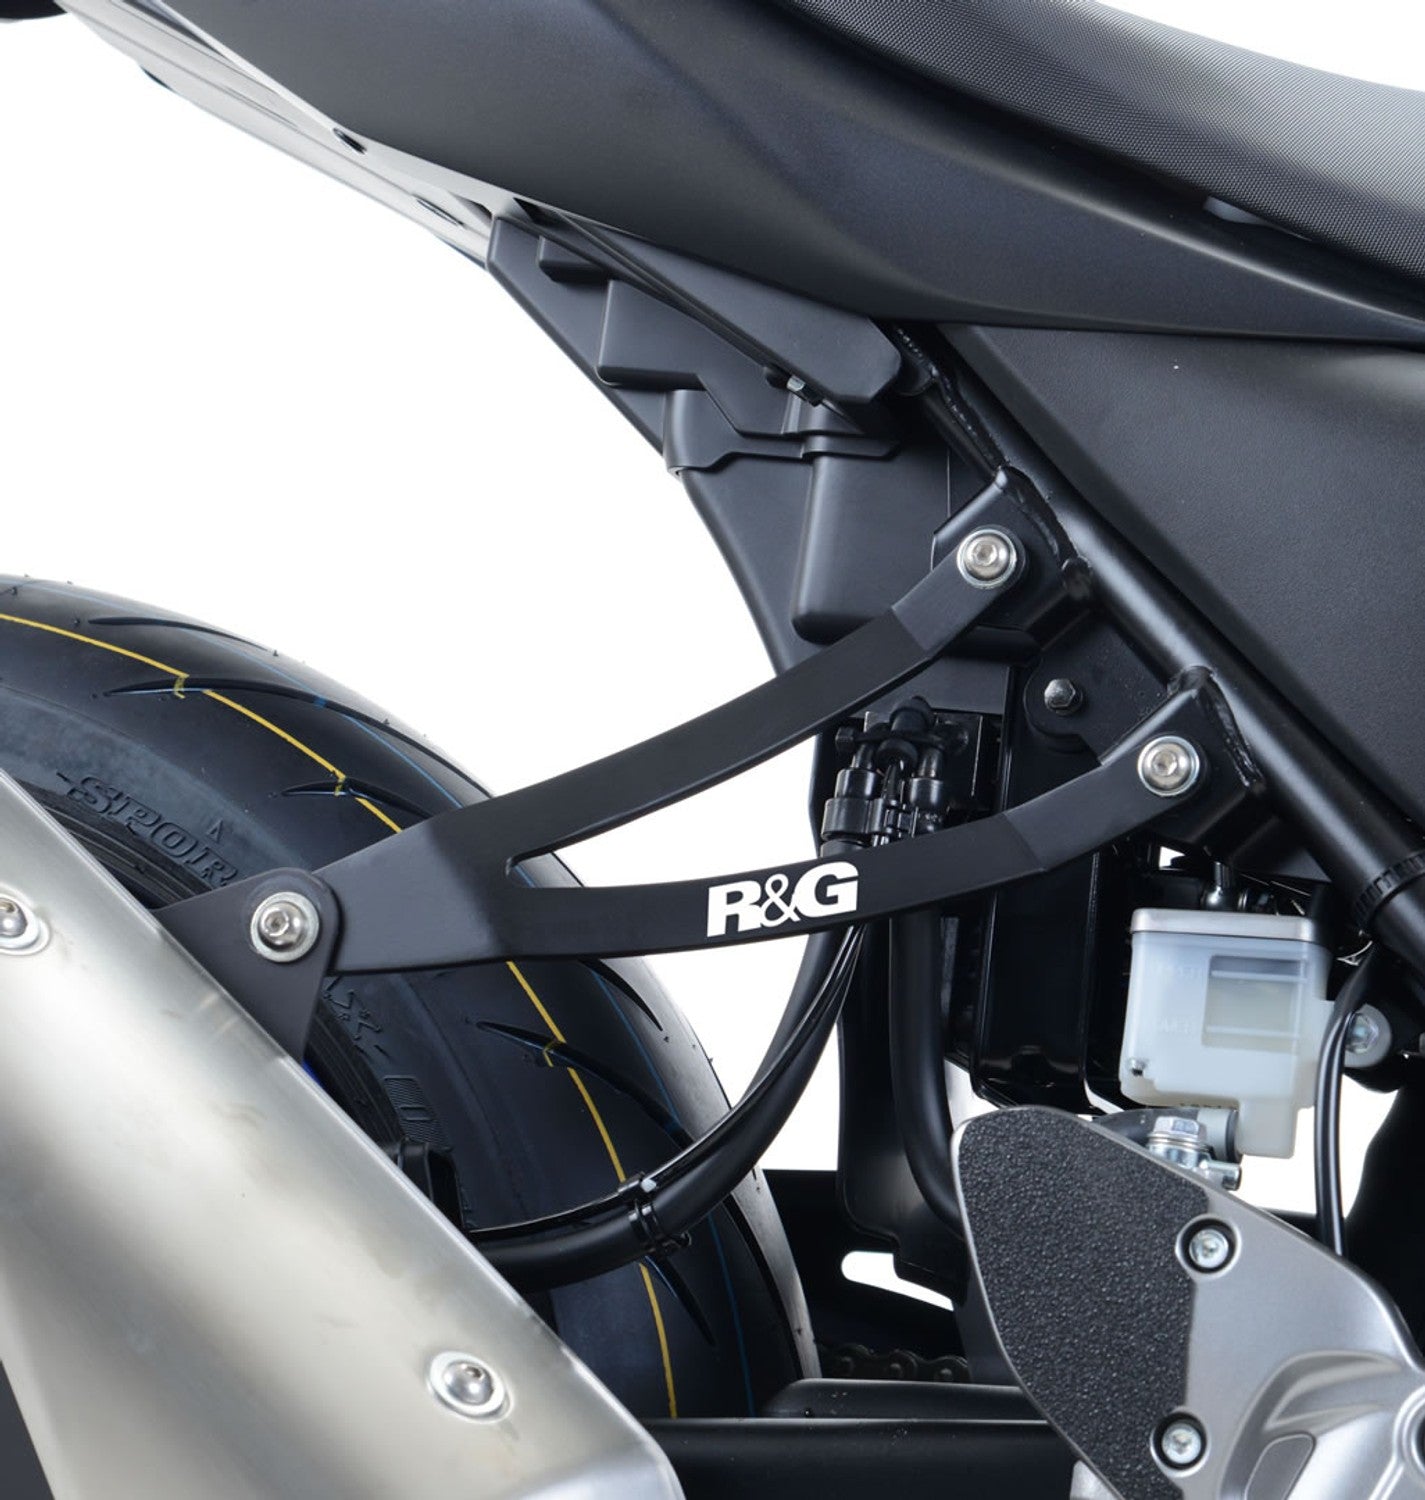 R&G Exhaust Hanger & Footrest Blanking Plate for Suzuki SV650 2016-2019 / X 2018-2019